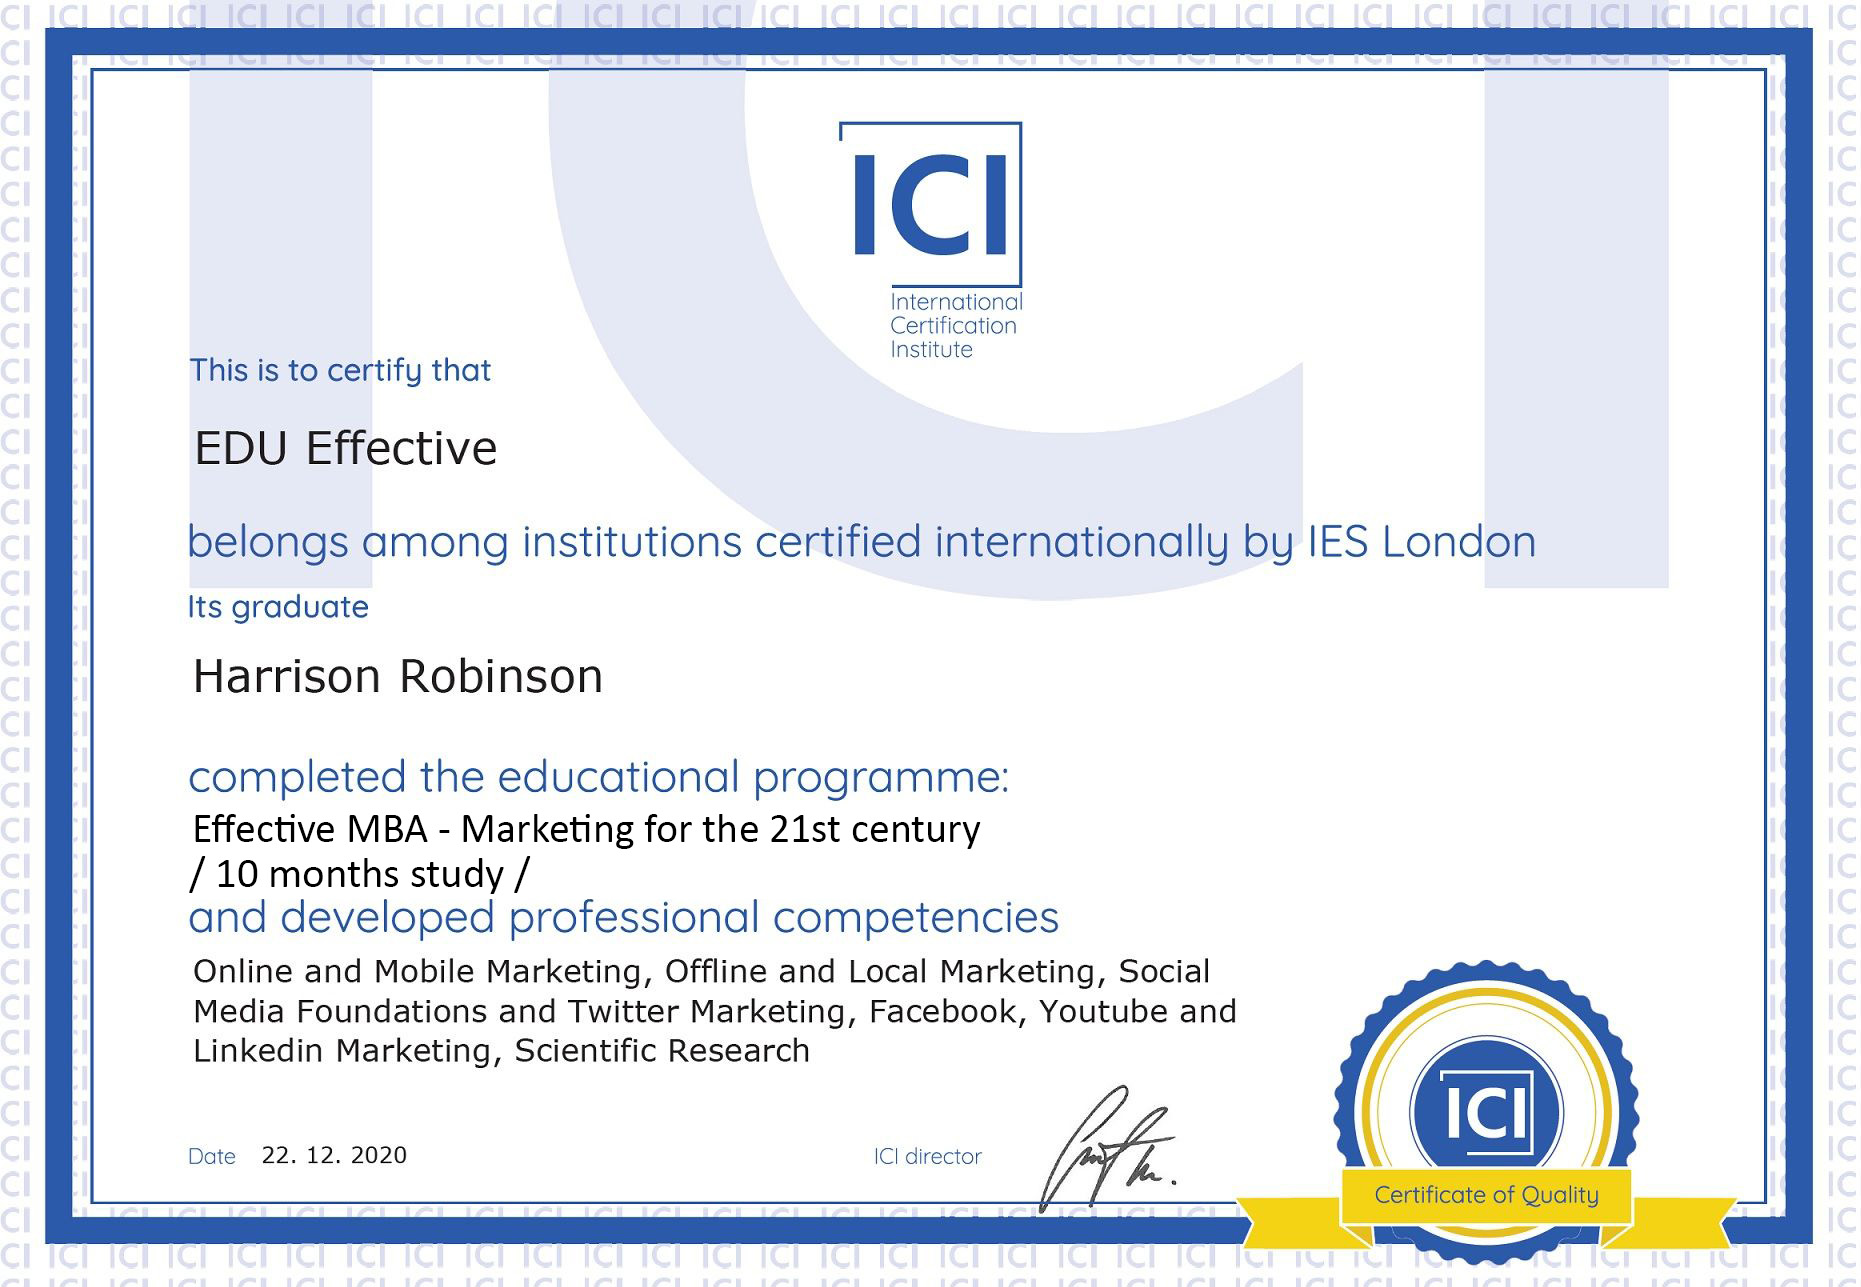 ICI Certificate